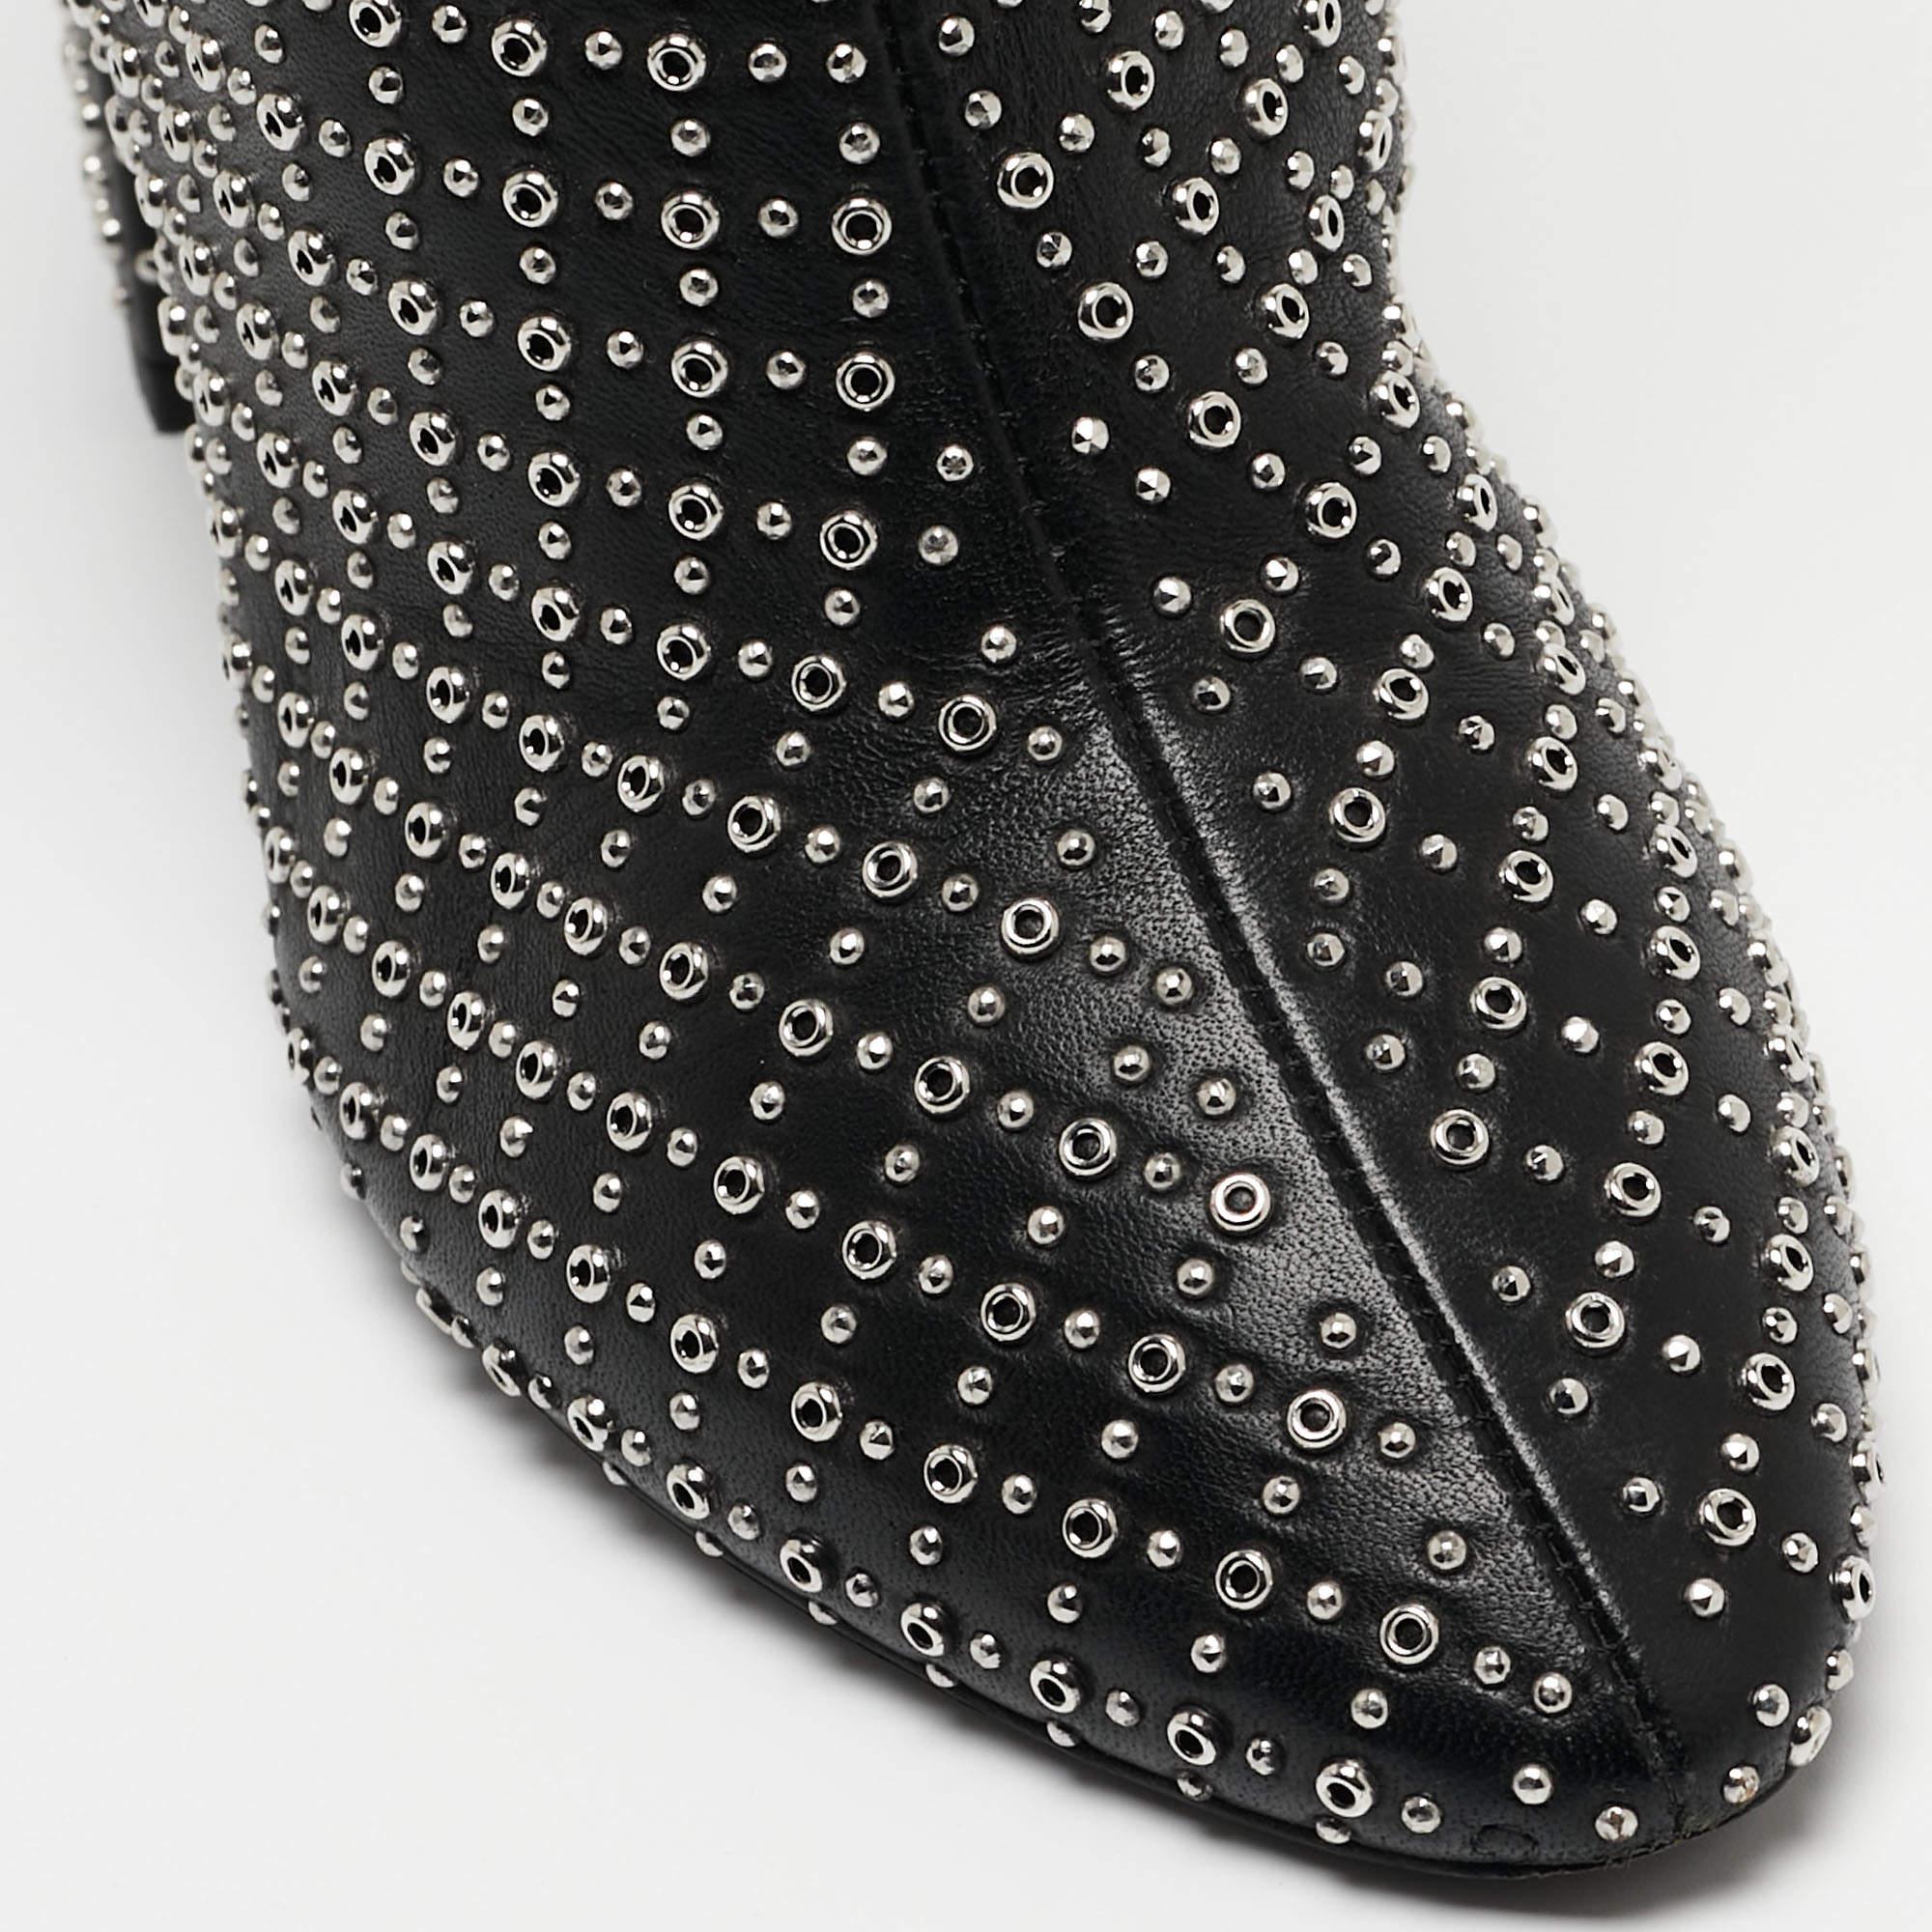 Saint Laurent Black Leather Buckle Ankle Boots Size 37 In Good Condition For Sale In Dubai, Al Qouz 2